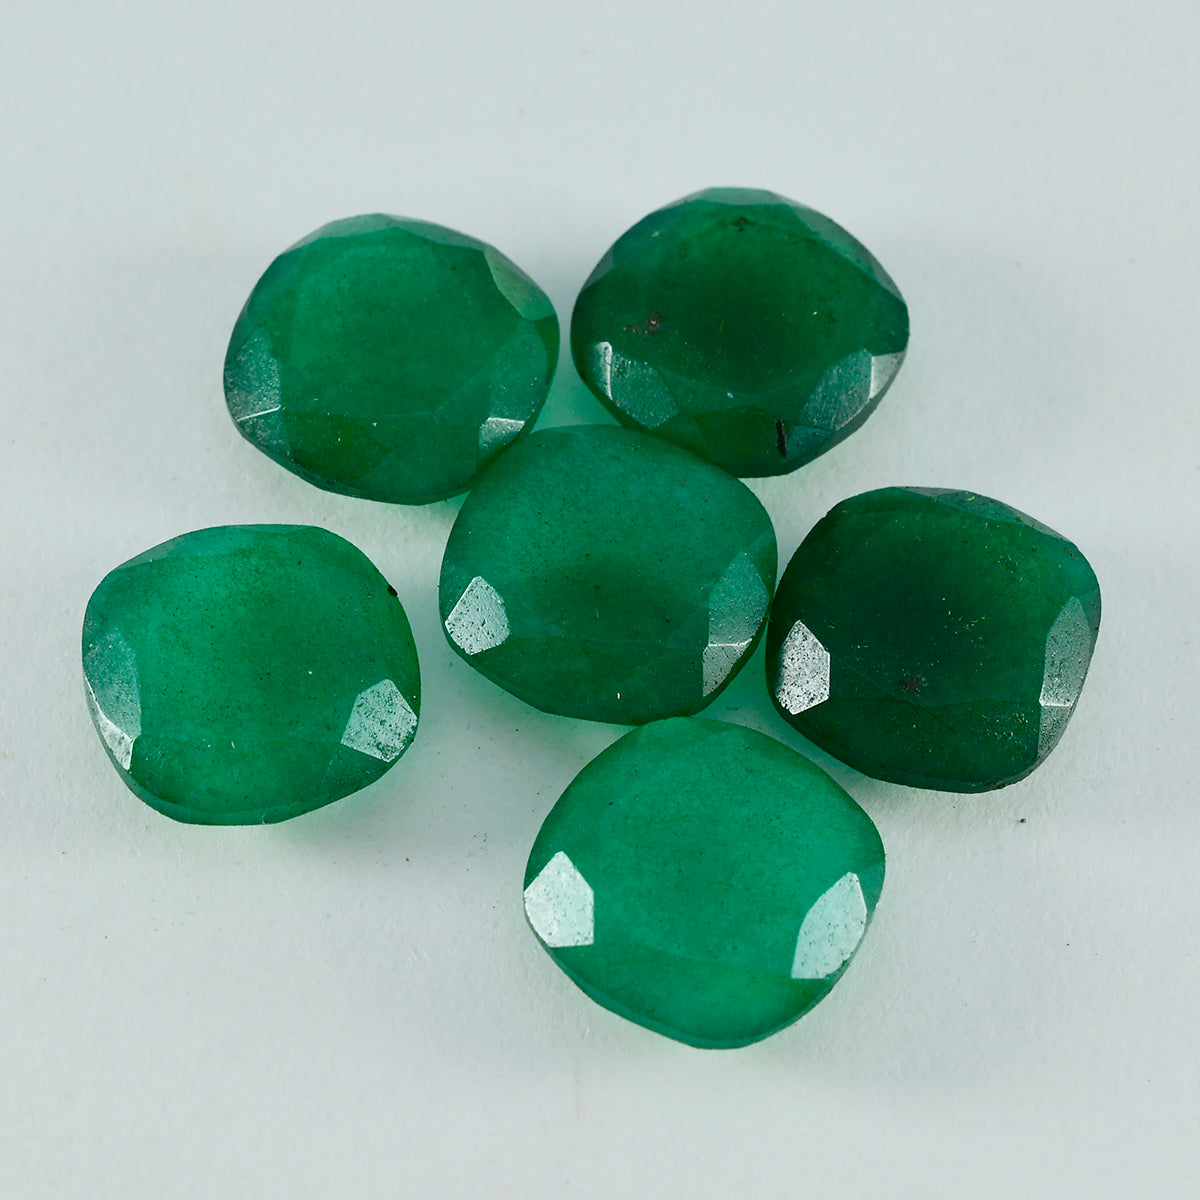 riyogems 1pc 本物のグリーンジャスパー ファセット 10x10 mm クッション形状のハンサムな品質の宝石